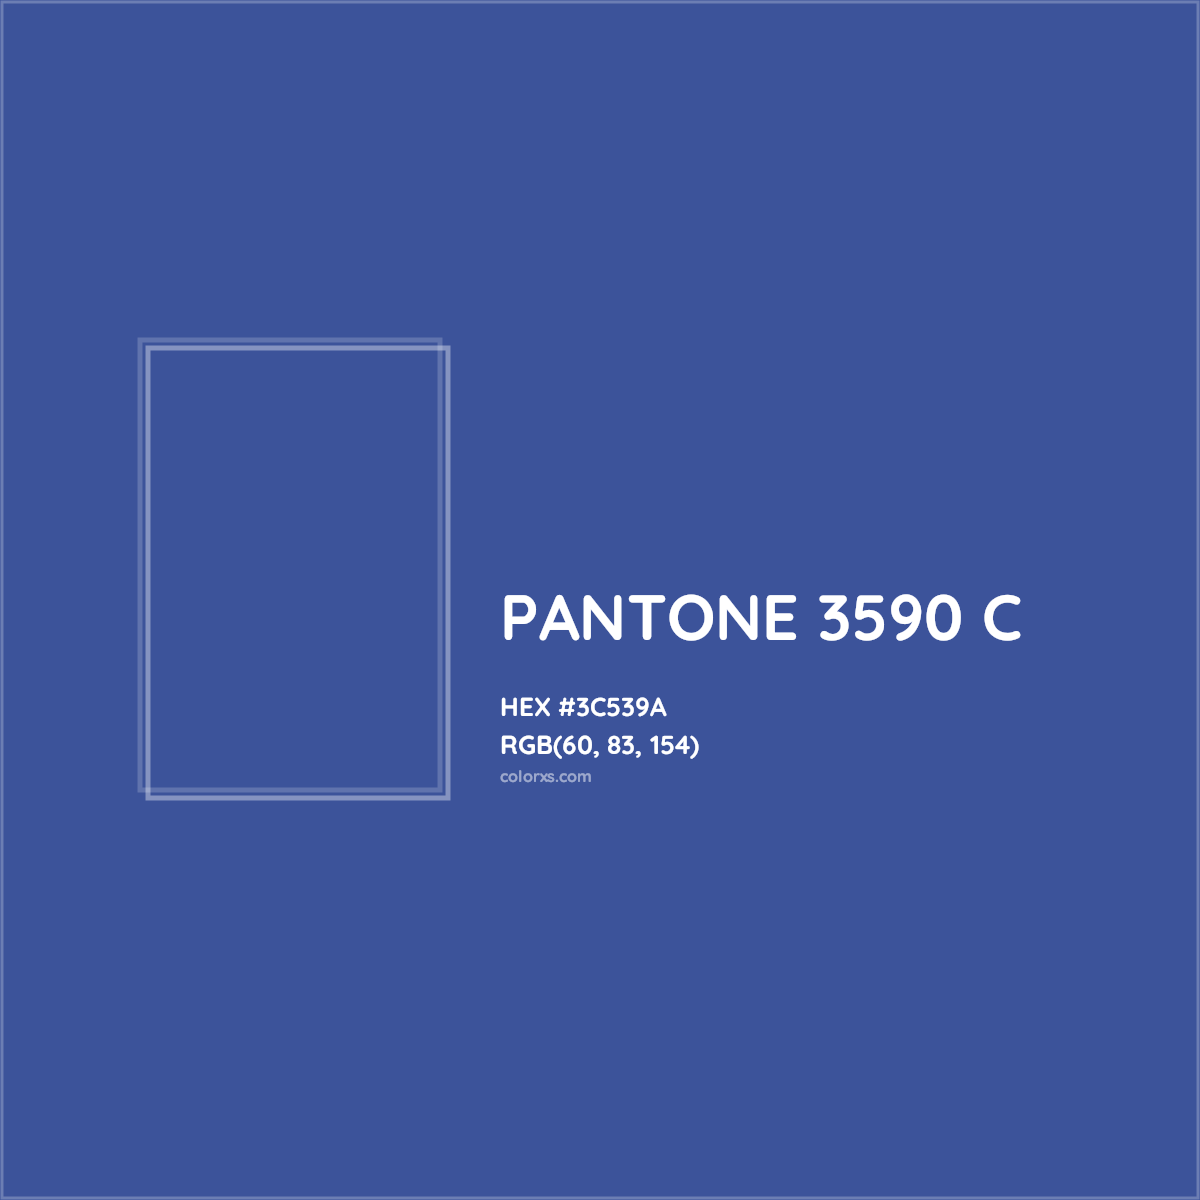 HEX #3C539A PANTONE 3590 C CMS Pantone PMS - Color Code